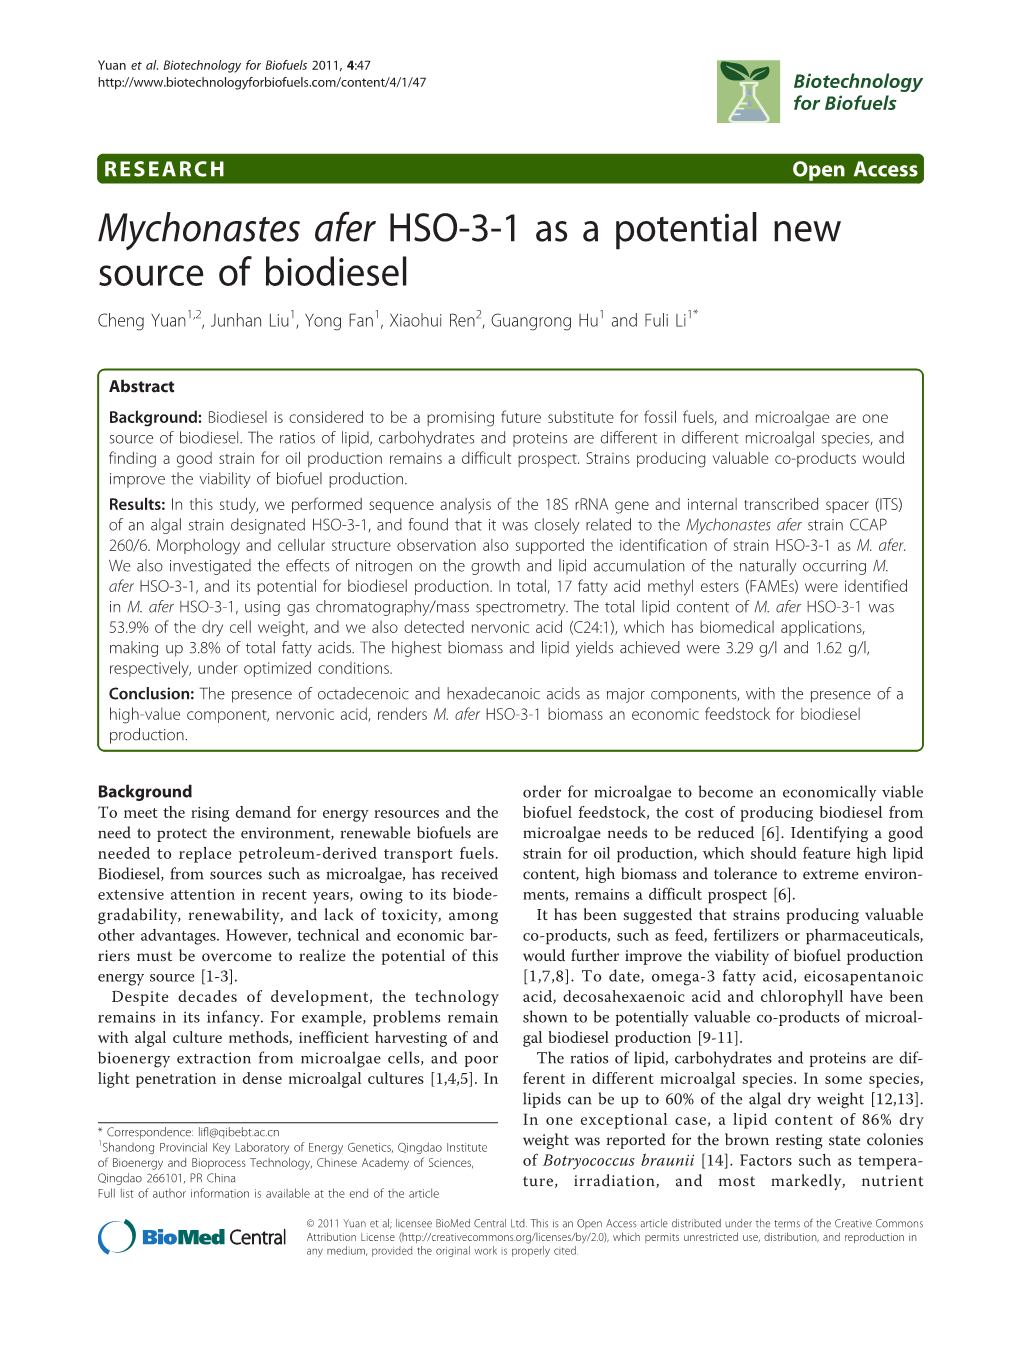 Mychonastes Afer HSO-3-1 As a Potential New Source of Biodiesel Cheng Yuan1,2, Junhan Liu1, Yong Fan1, Xiaohui Ren2, Guangrong Hu1 and Fuli Li1*